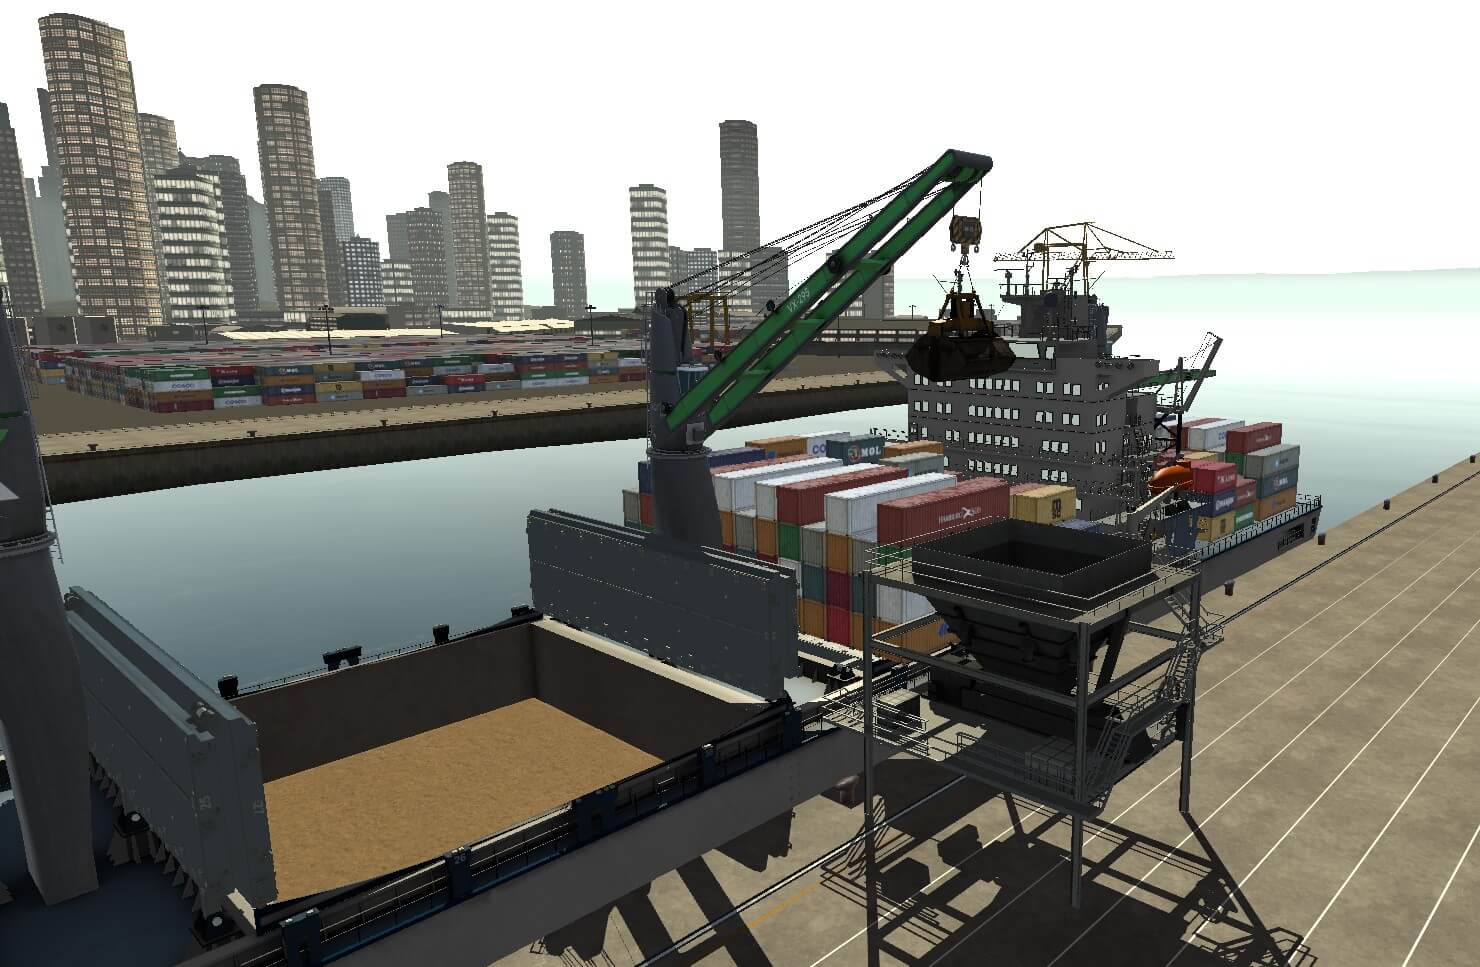 Ship Pedestal Crane Simulator Training Pack ready for grain transfer exercise